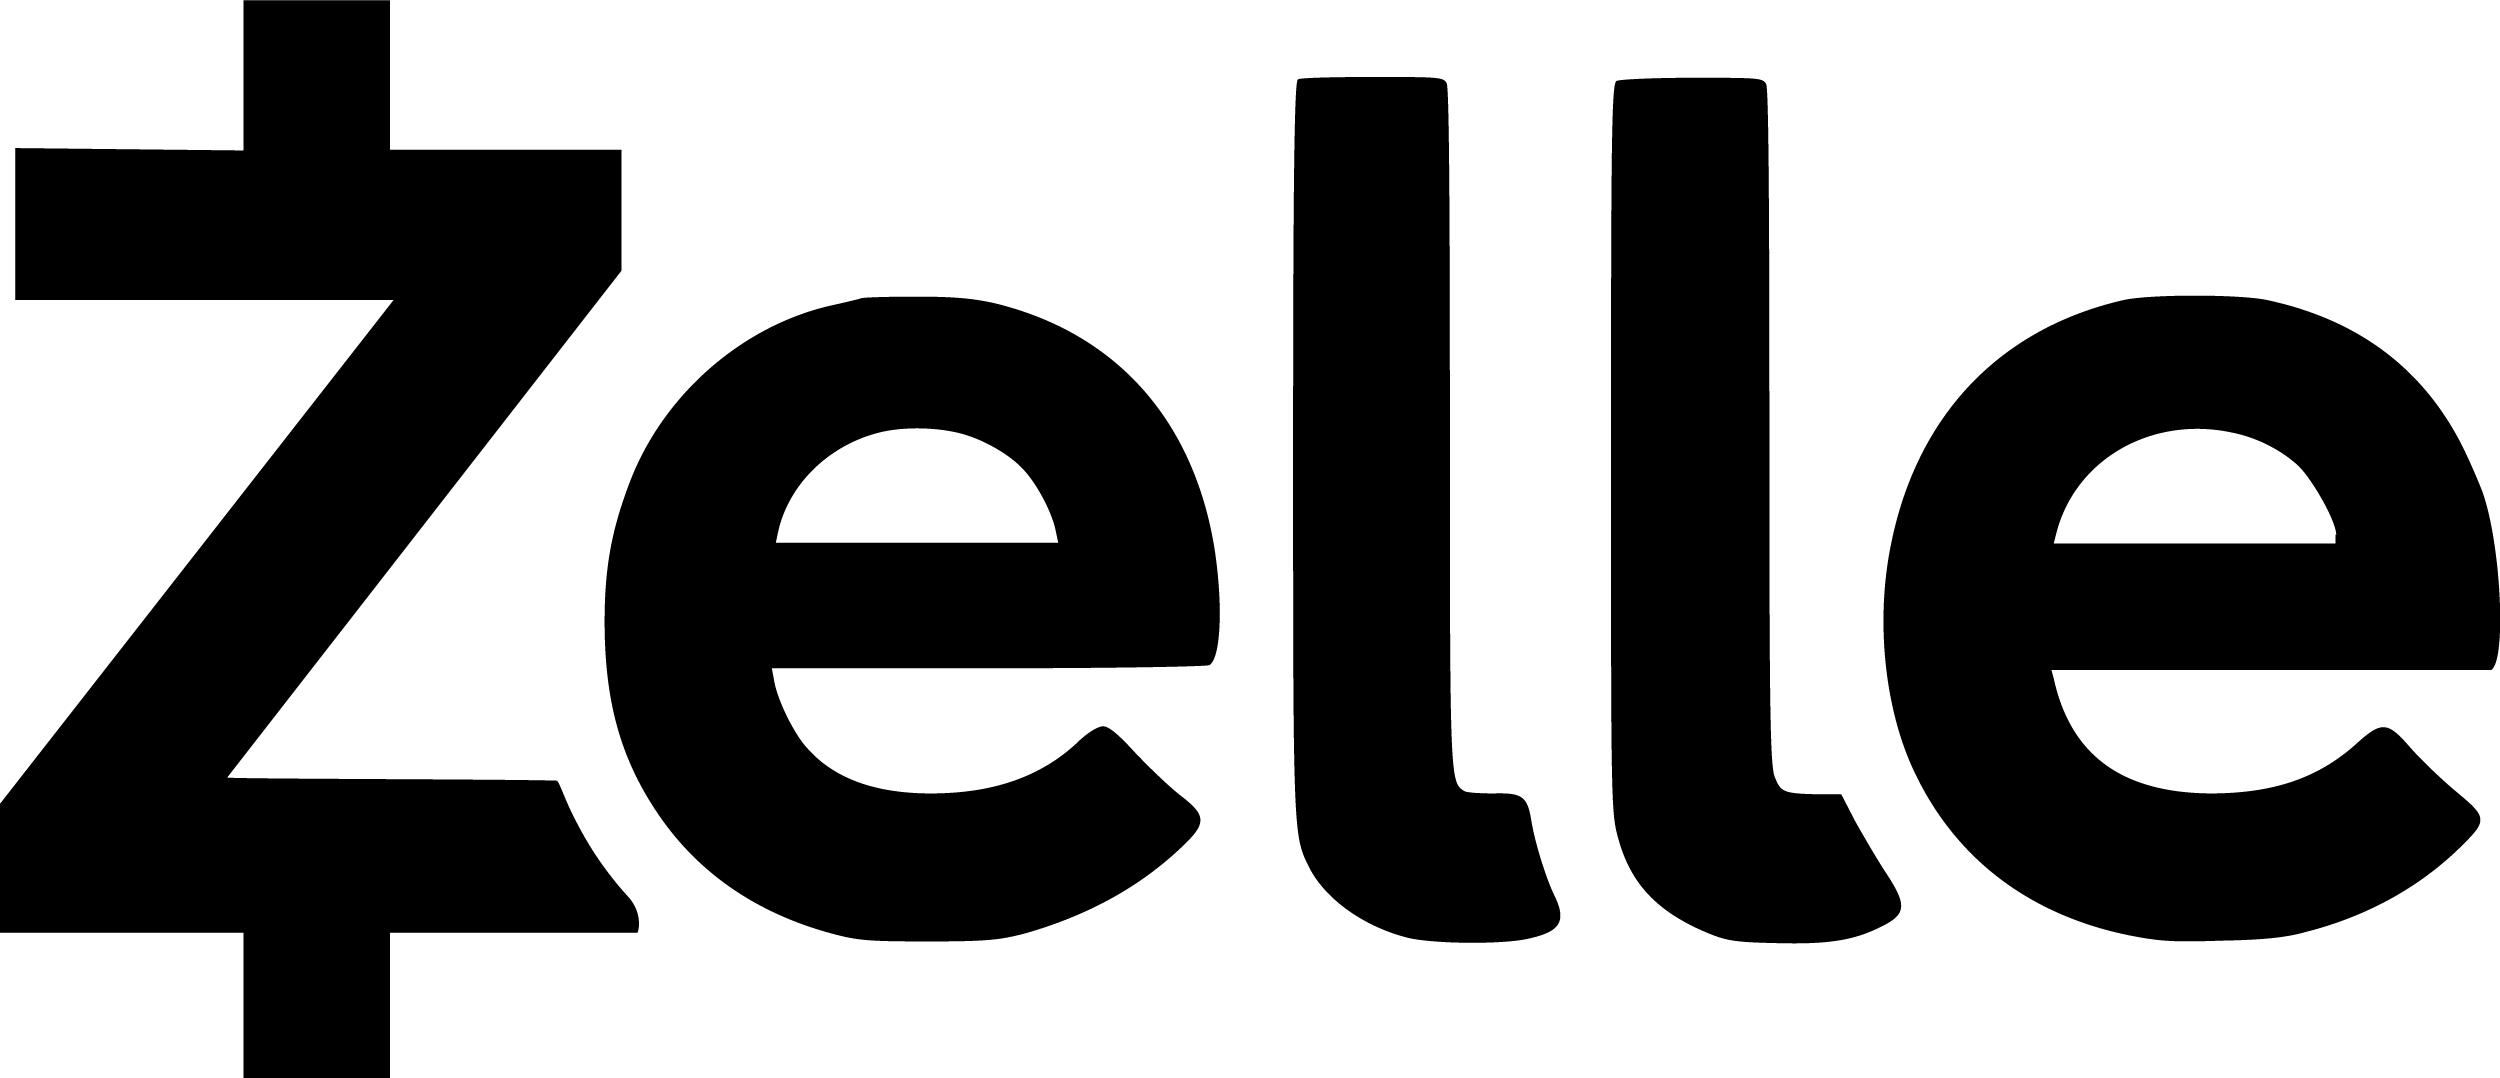 zelle logo black and white